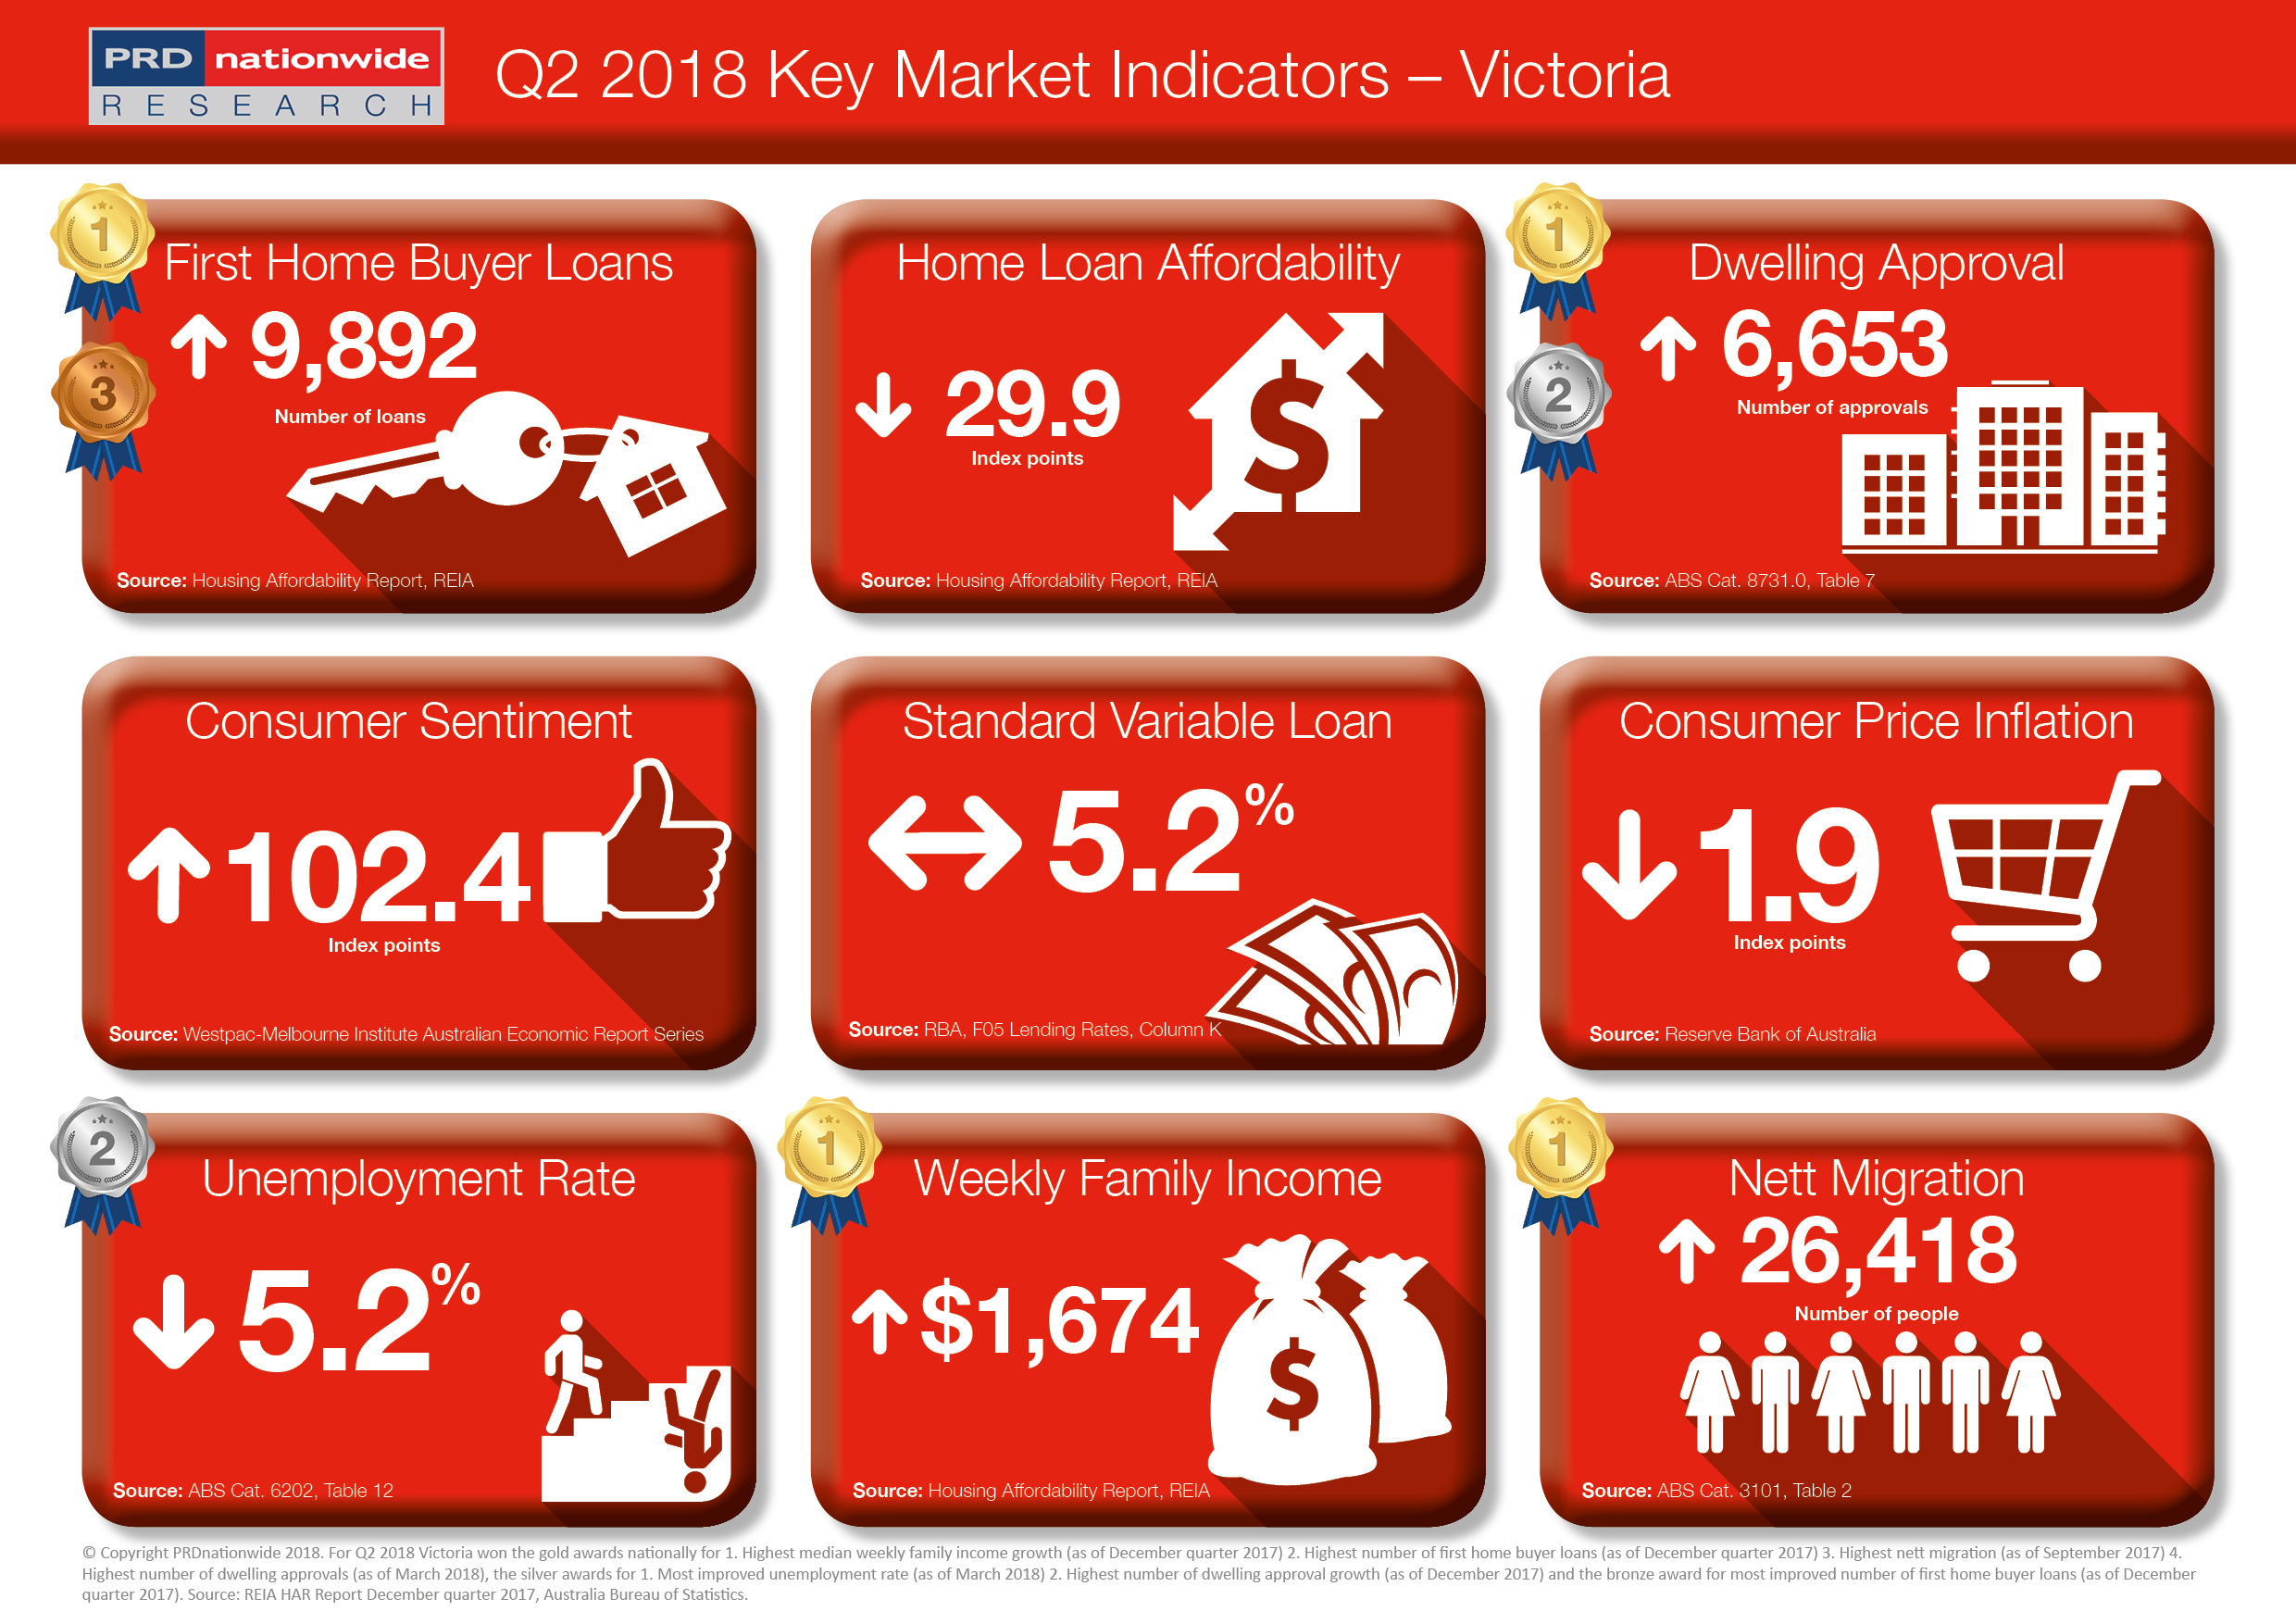 PRD Q2 Key Market Indicators 2018 - VIC.png